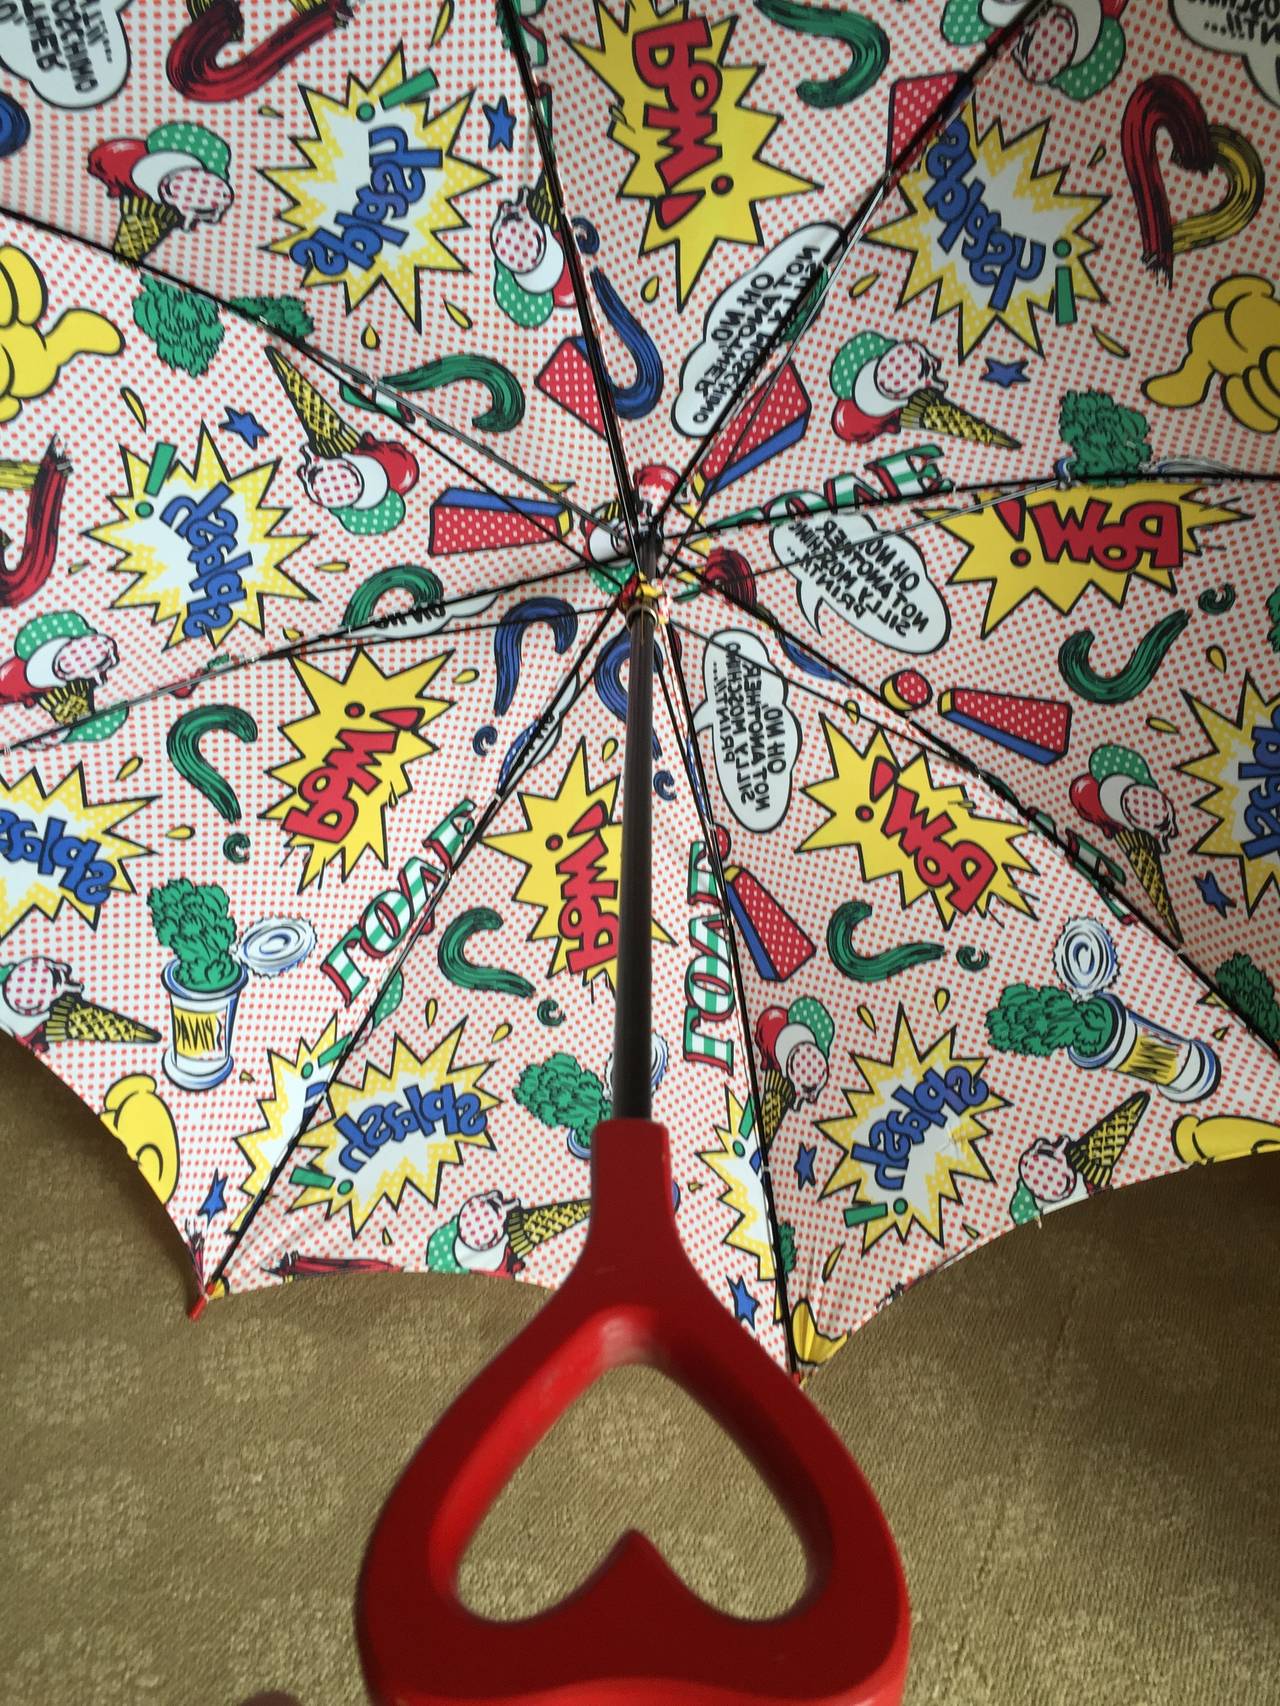 Moschino 1991 Lichtenstein Inspired Umbrella with Heart Handle 2